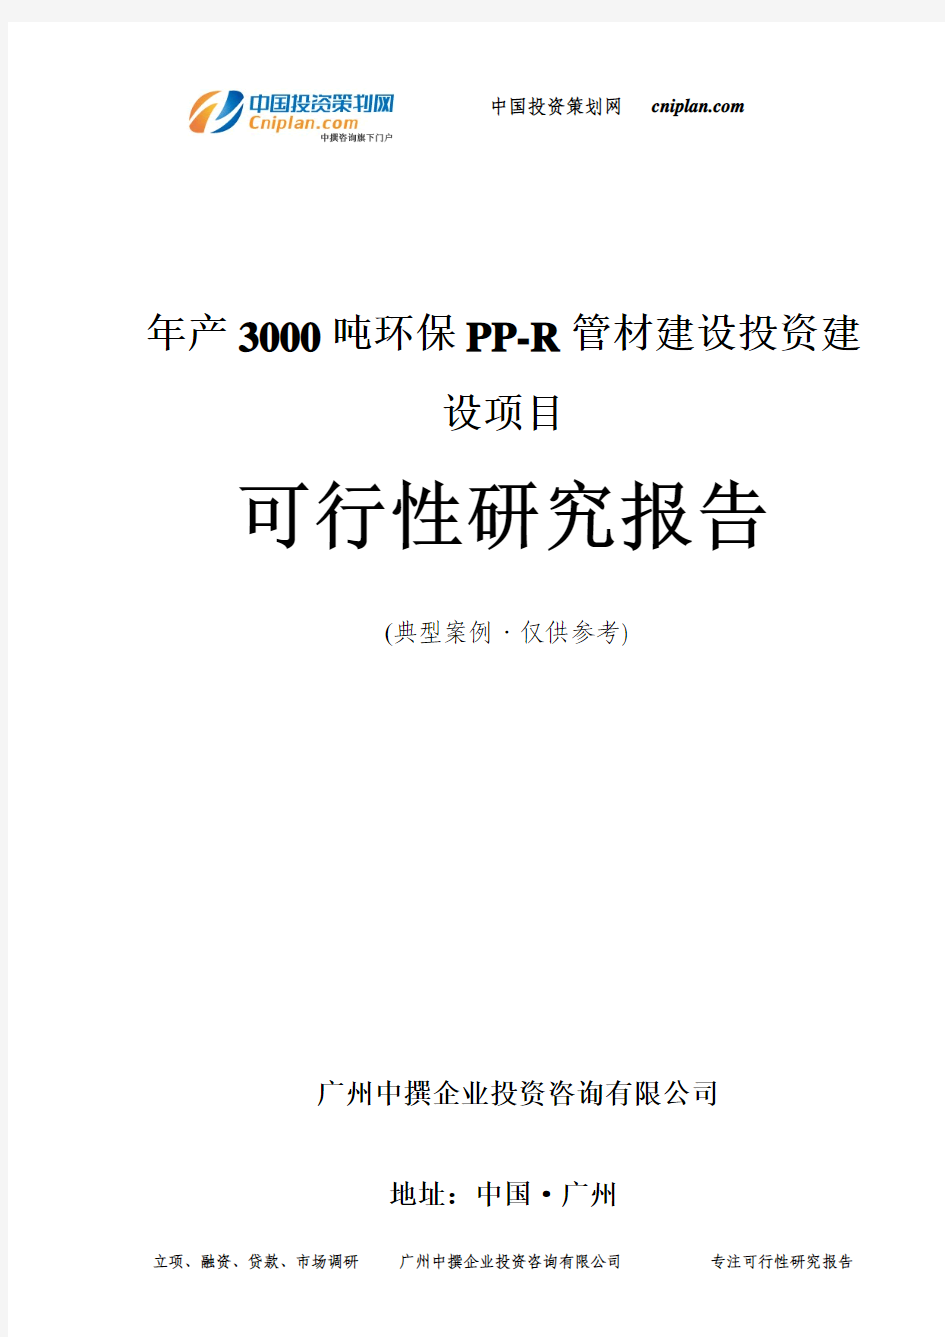 年产3000吨环保PP-R管材建设投资建设项目可行性研究报告-广州中撰咨询